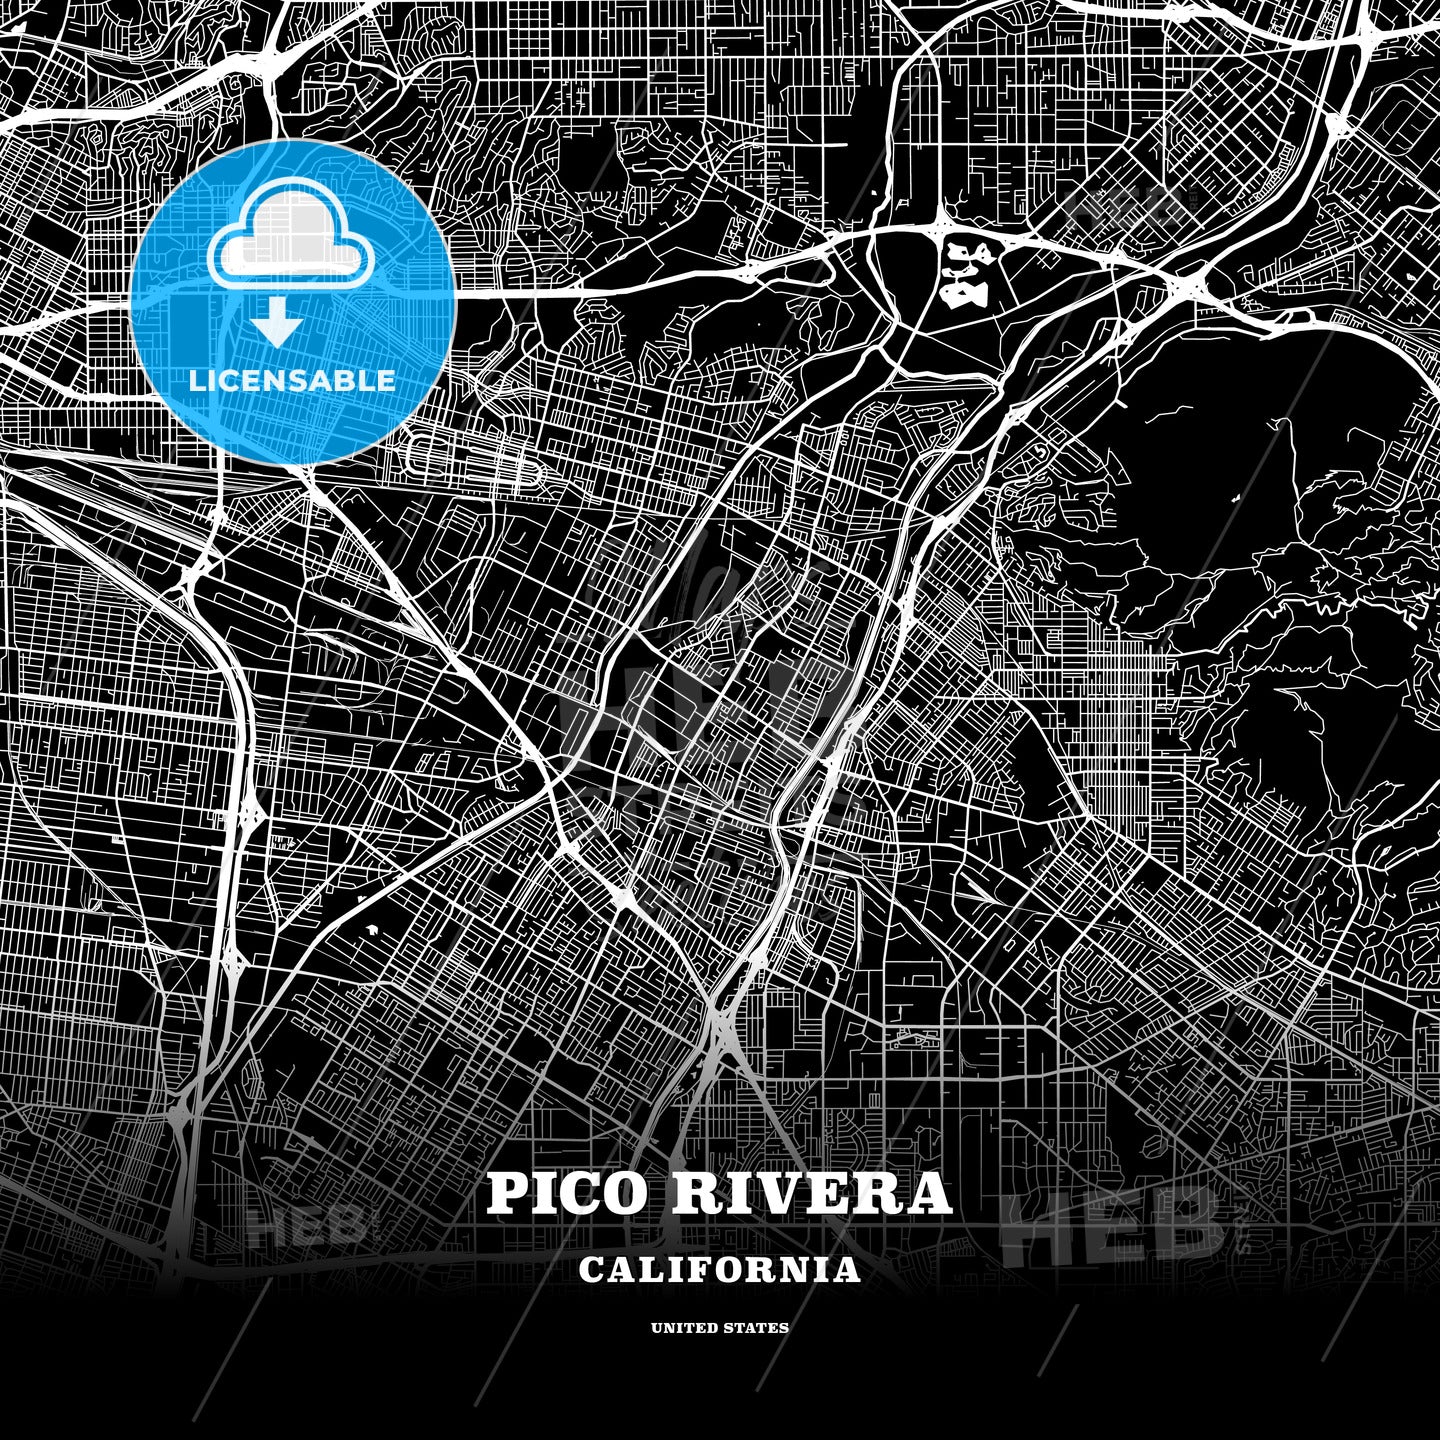 Pico Rivera, California, USA map